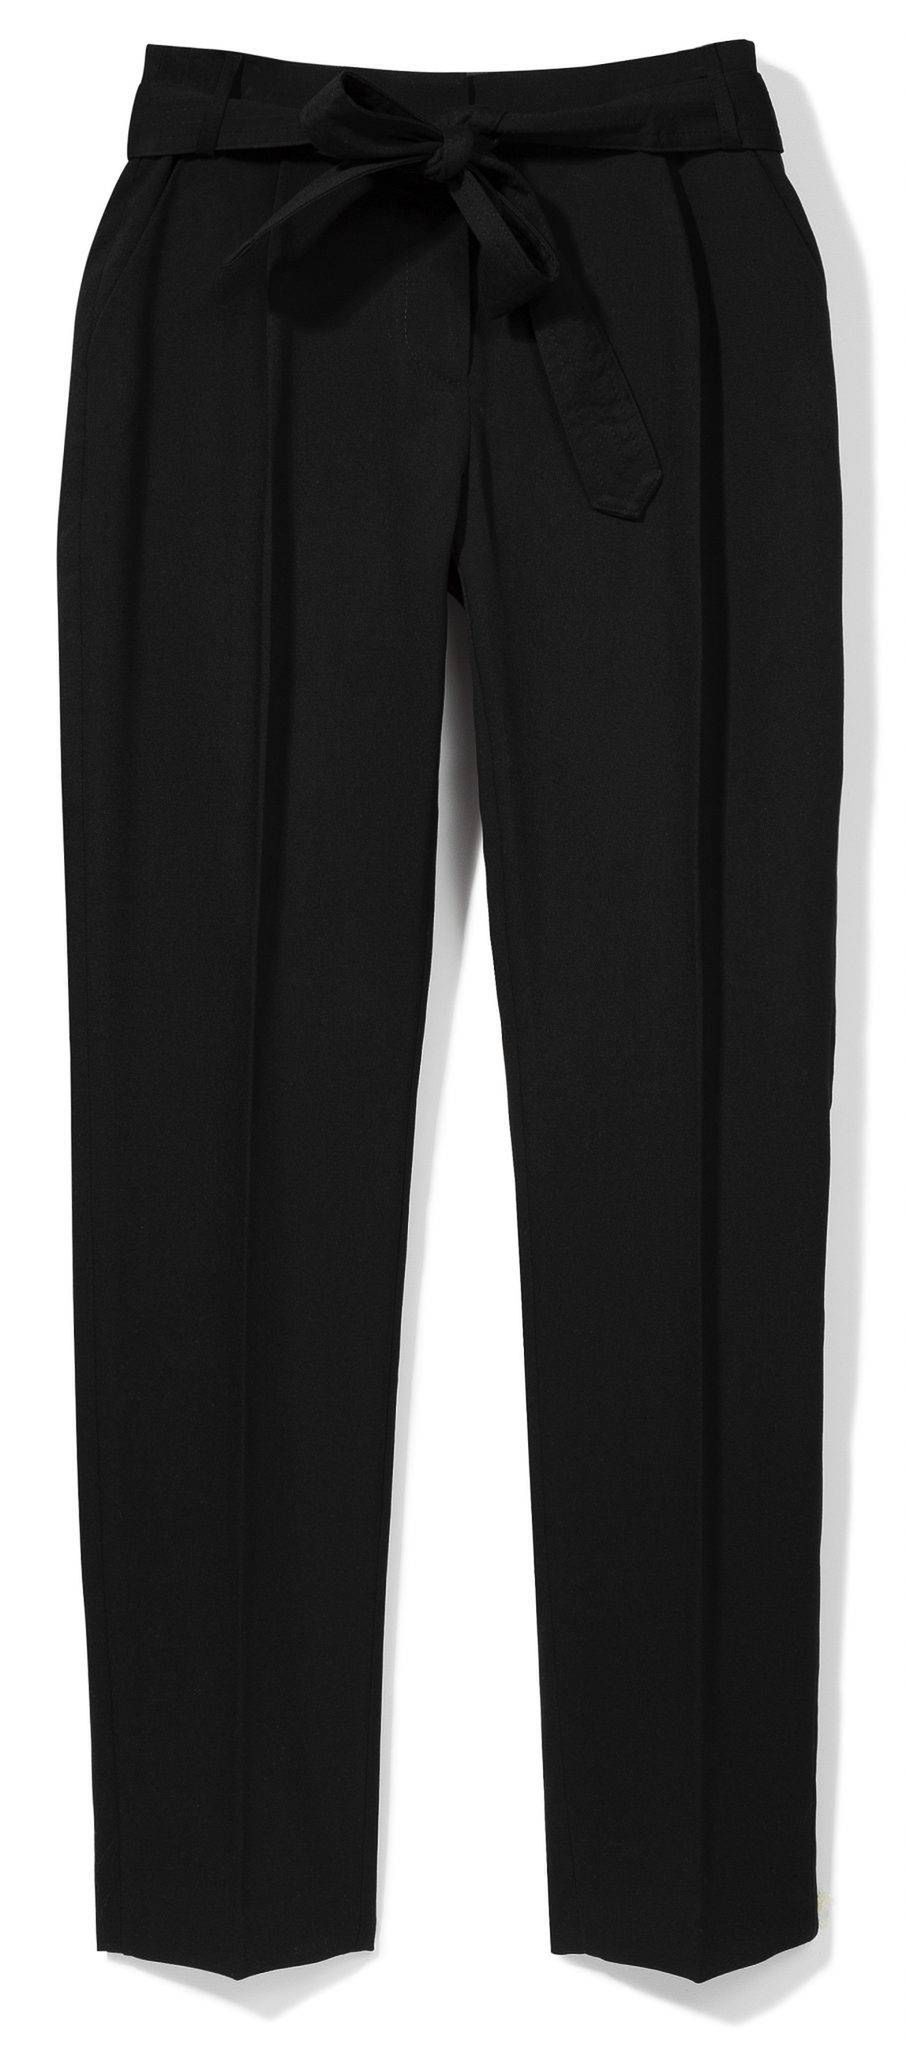 Spodnie, Reserved Concept, 129,99 pln